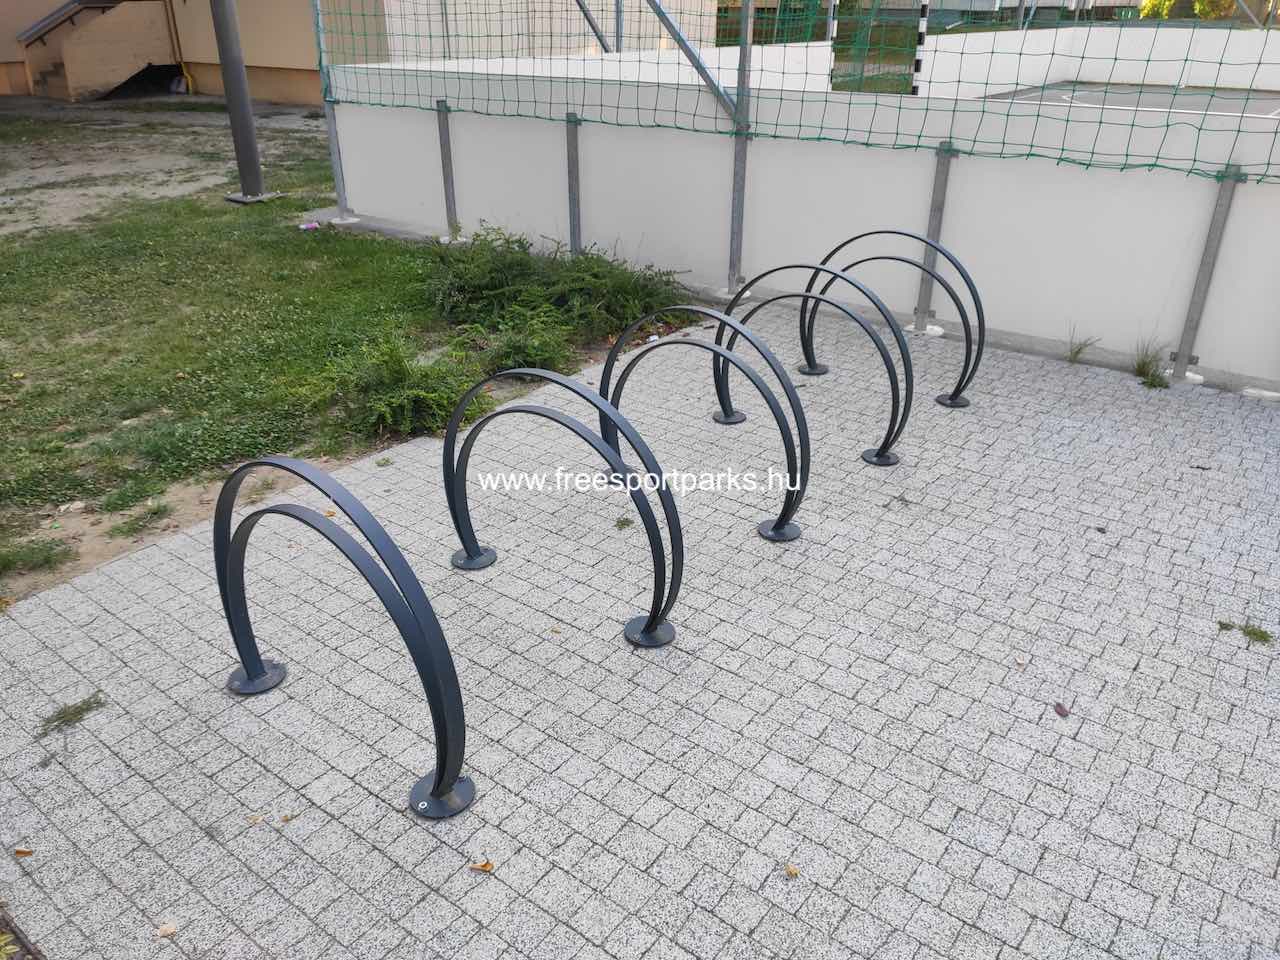 kerékpártároló - Say Ferenc utcai park, Siófok - Free Sport Parks térkép